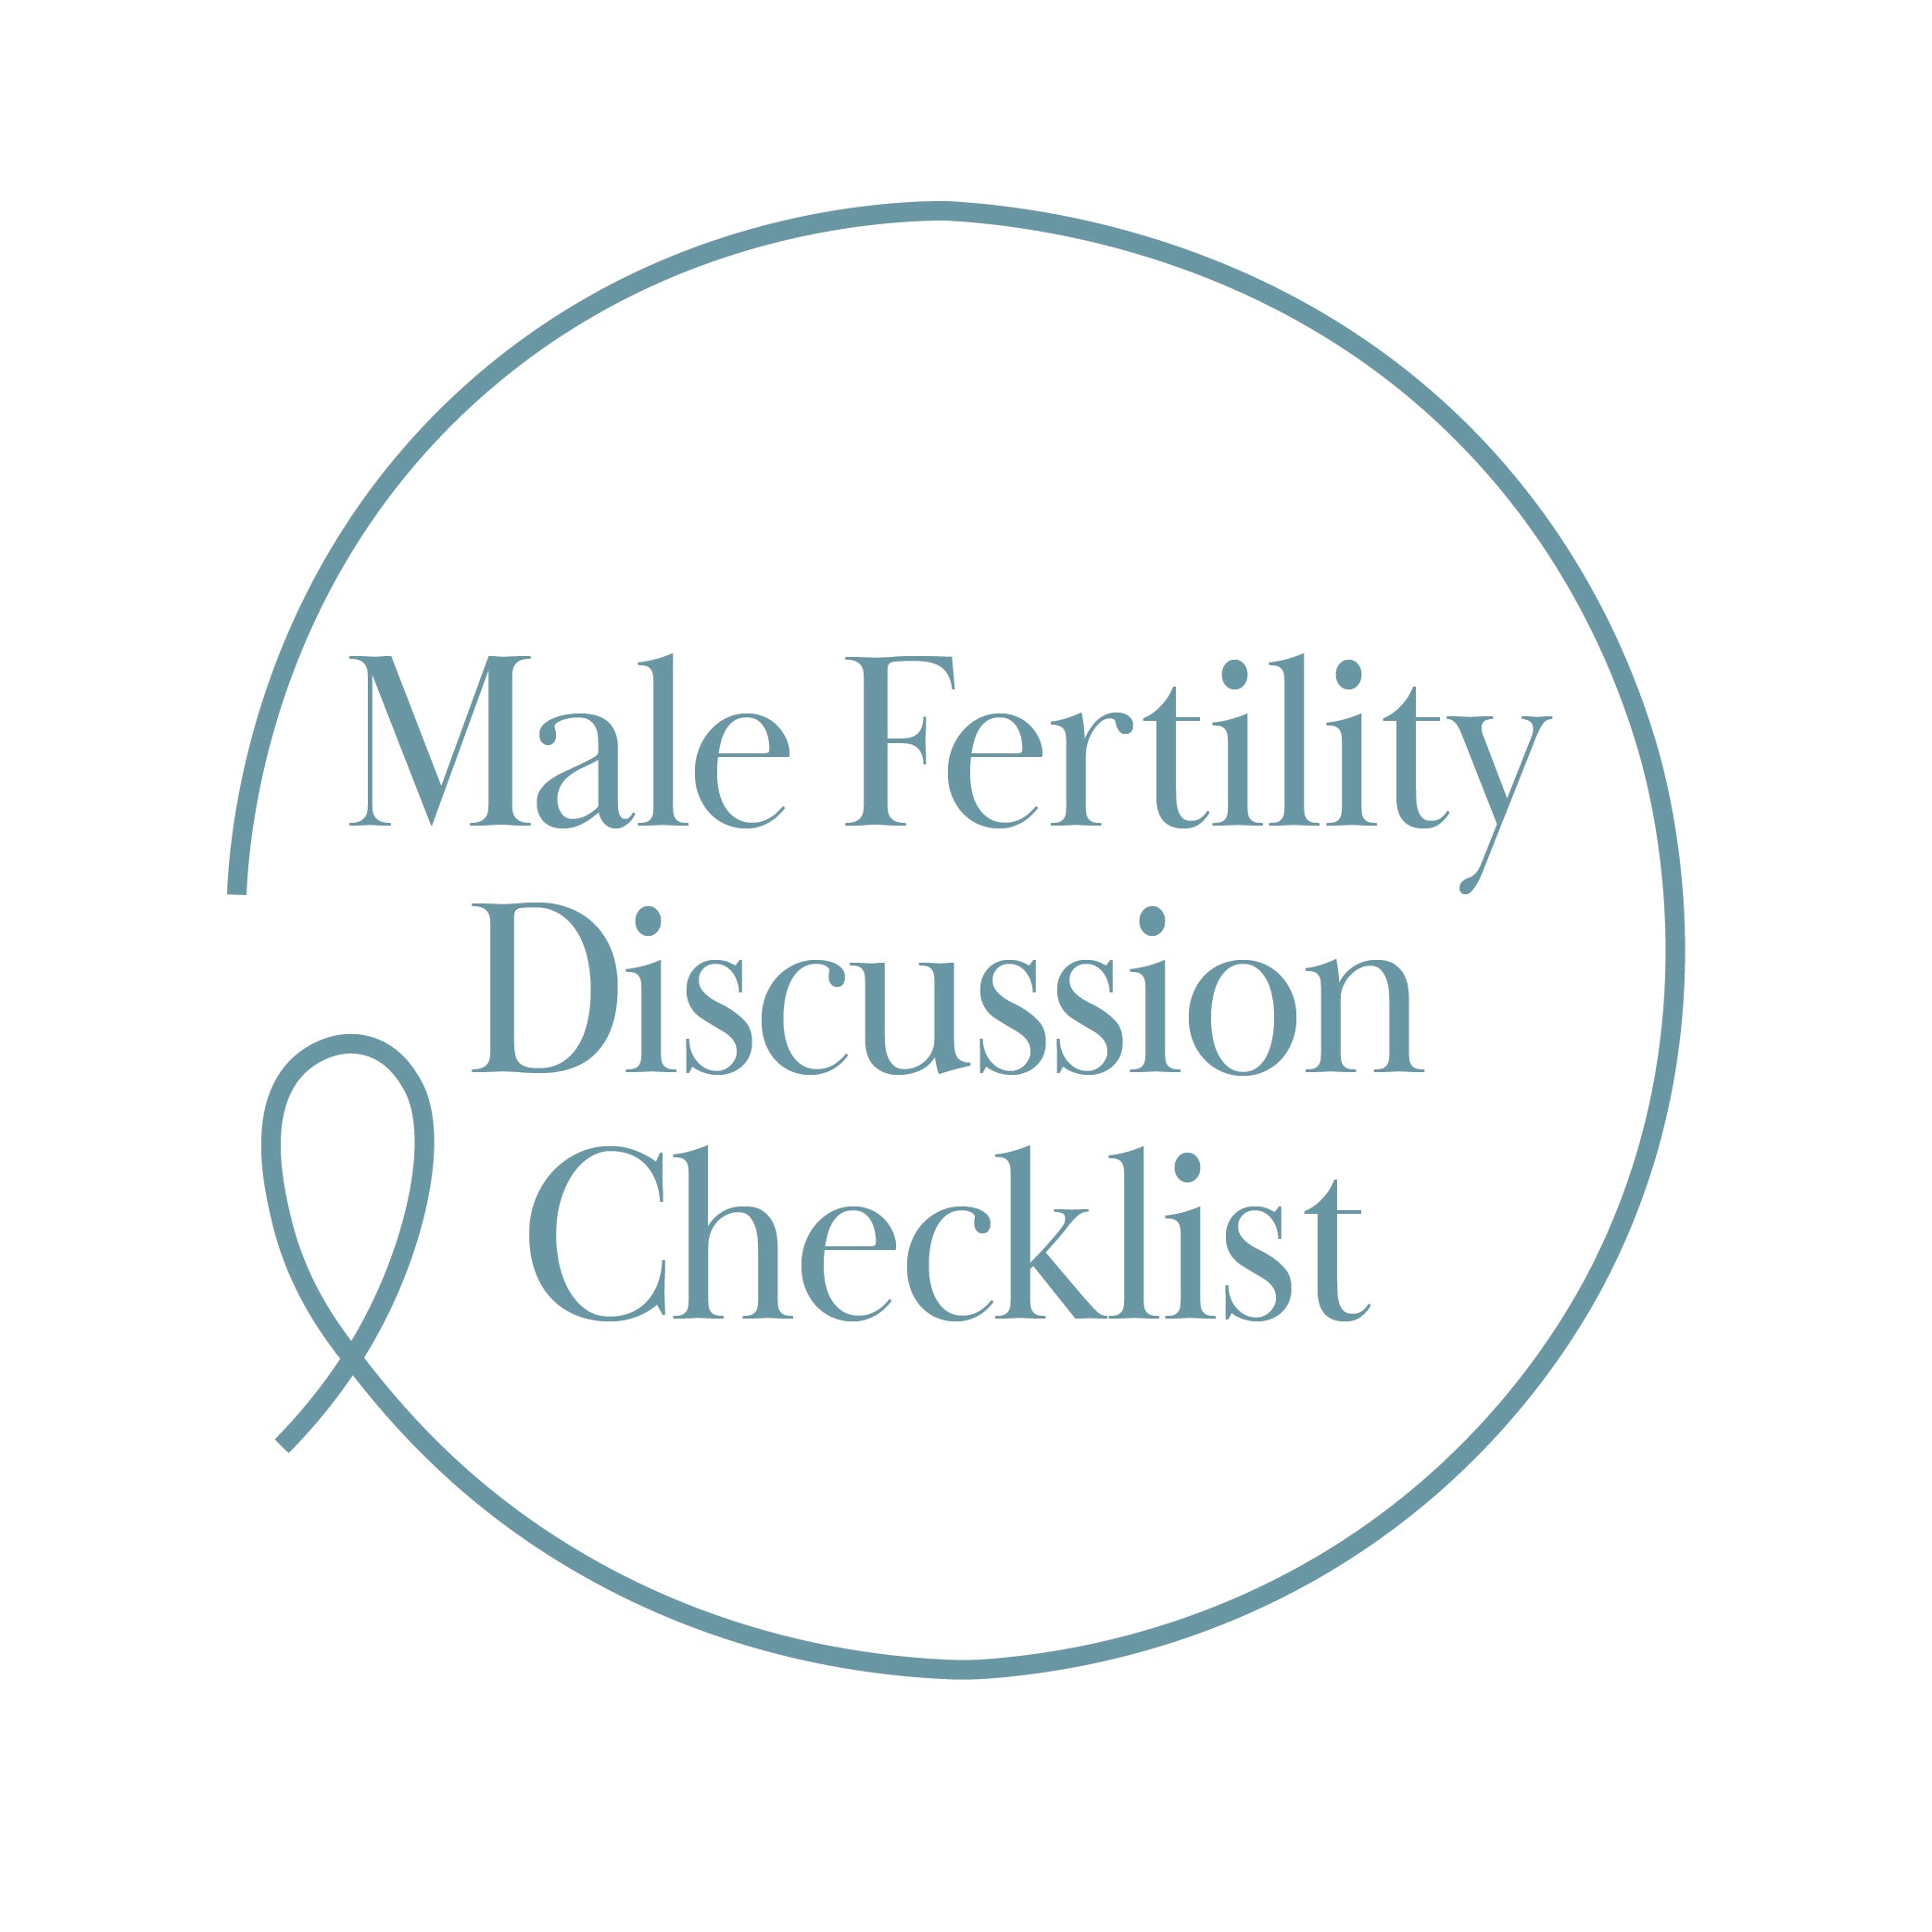 Male Fertility Discussion Checklist